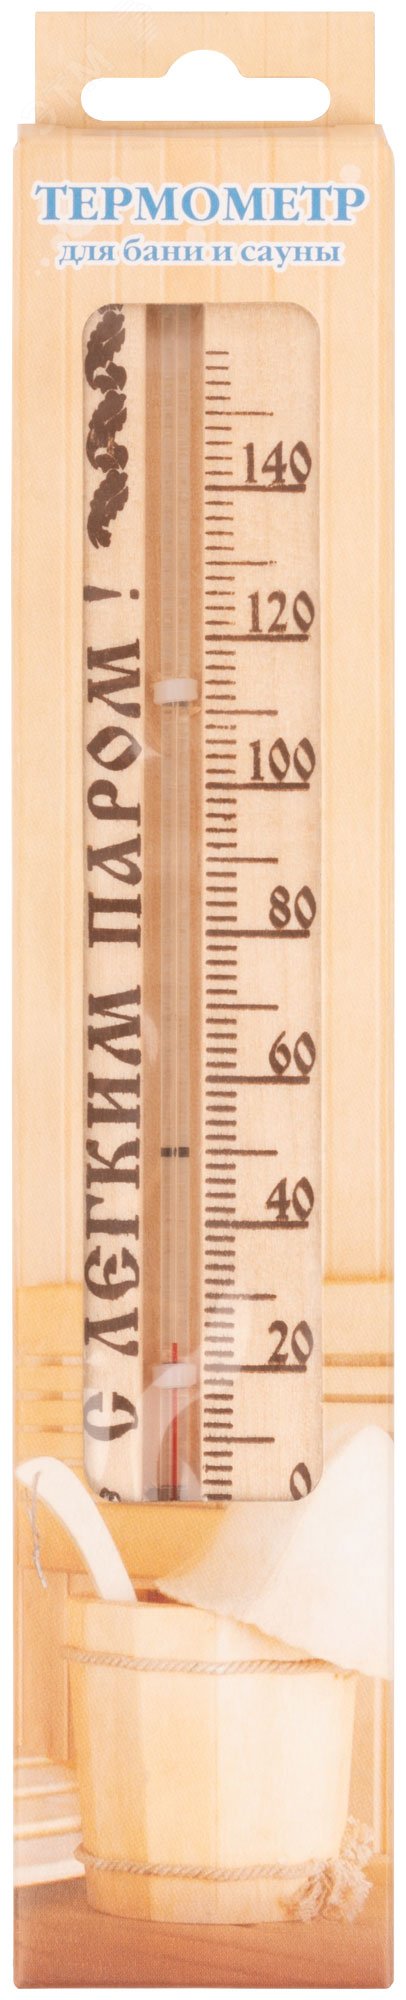 Термометр сувенирный для сауны малый ТБС-41 67922 РОС - превью 3